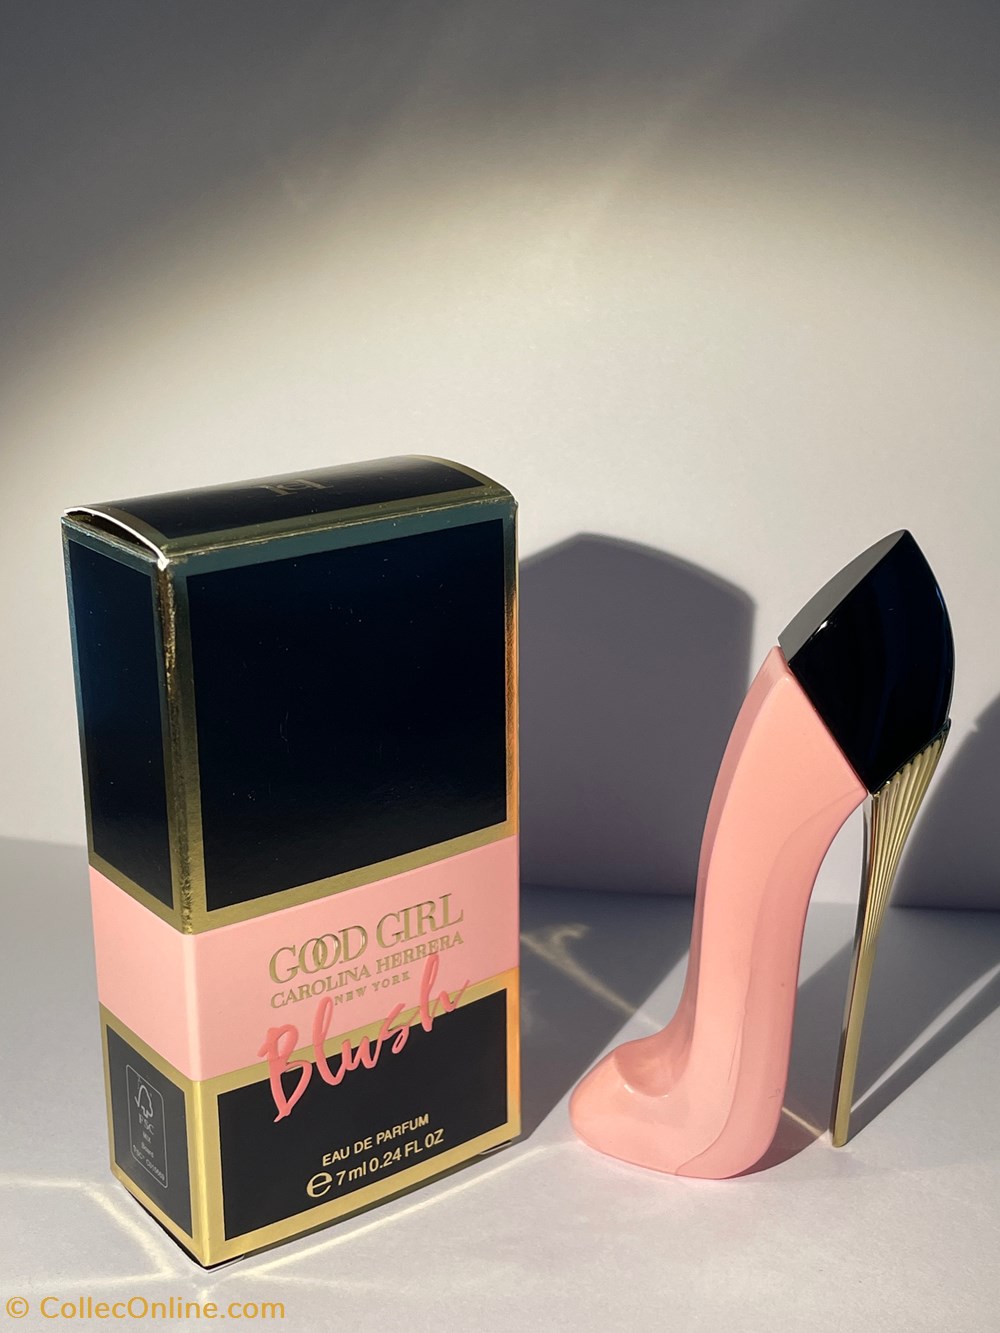 Carolina Herrera Good Girl BLUSH Eau de Parfum 0.24fl oz 7mL New Scent! Mini